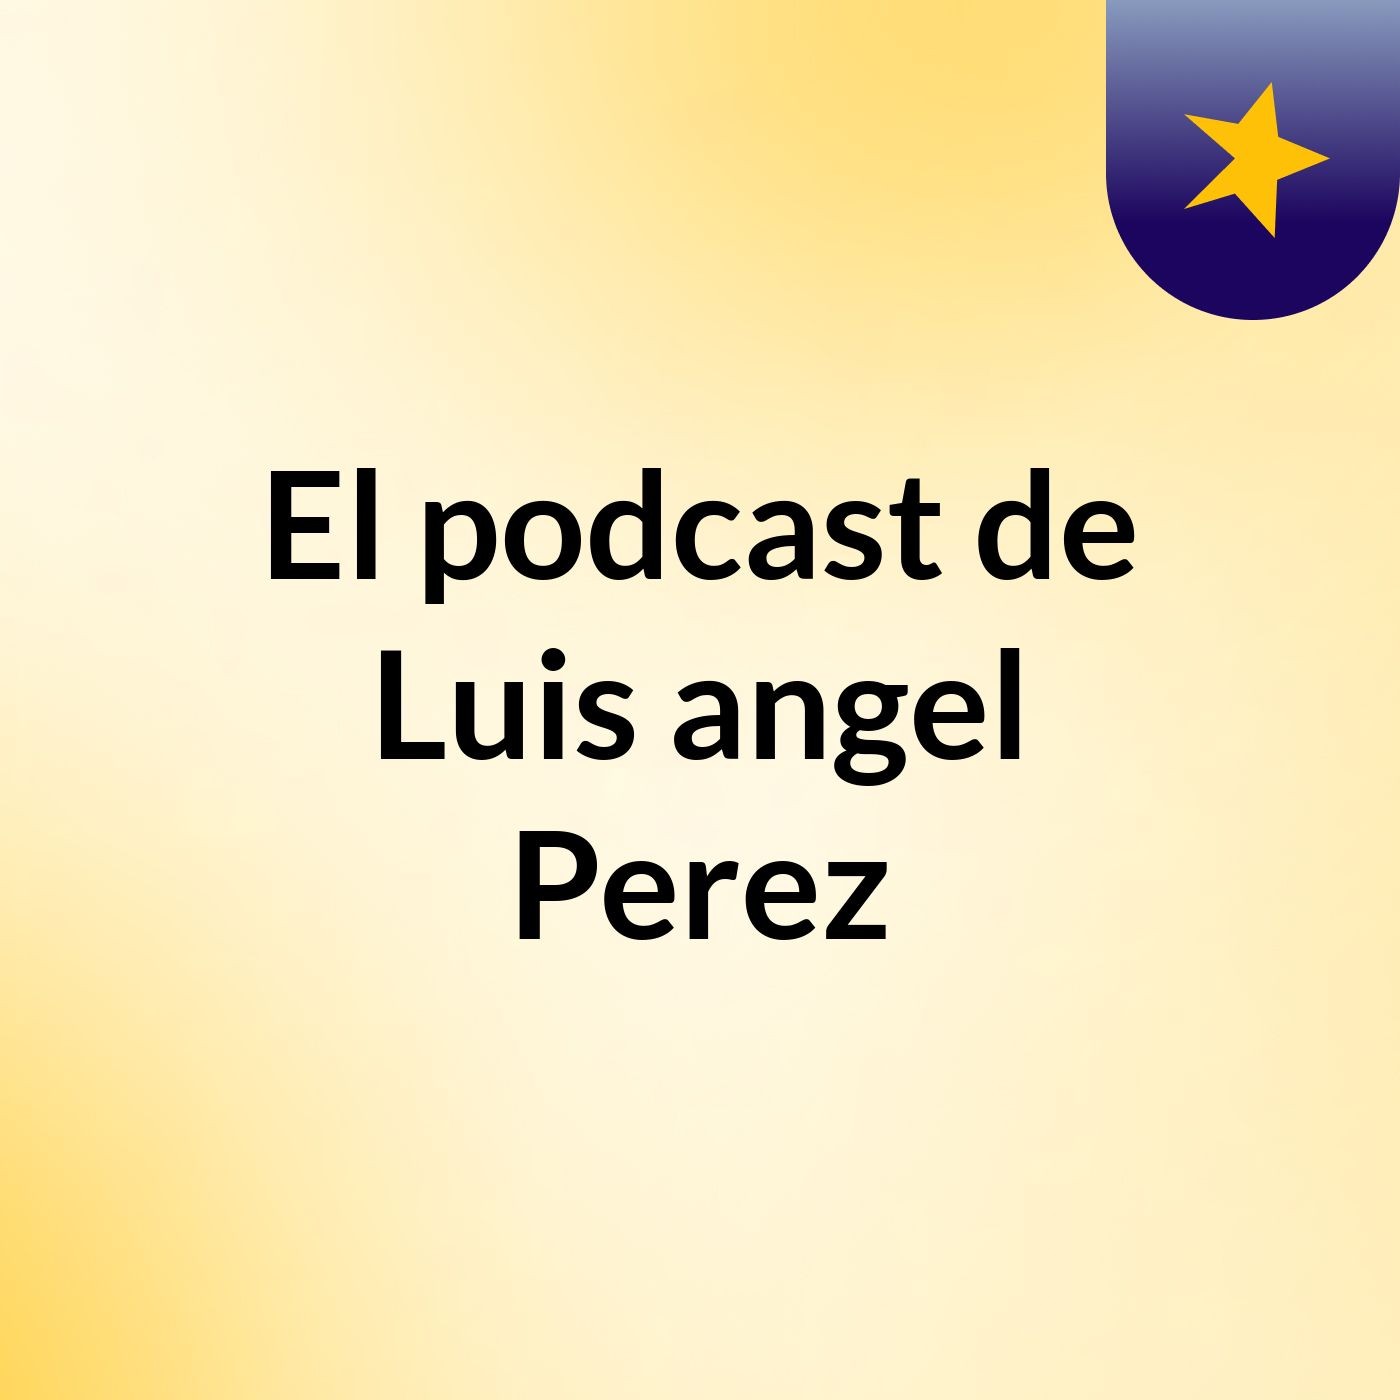 El podcast de Luis angel Perez